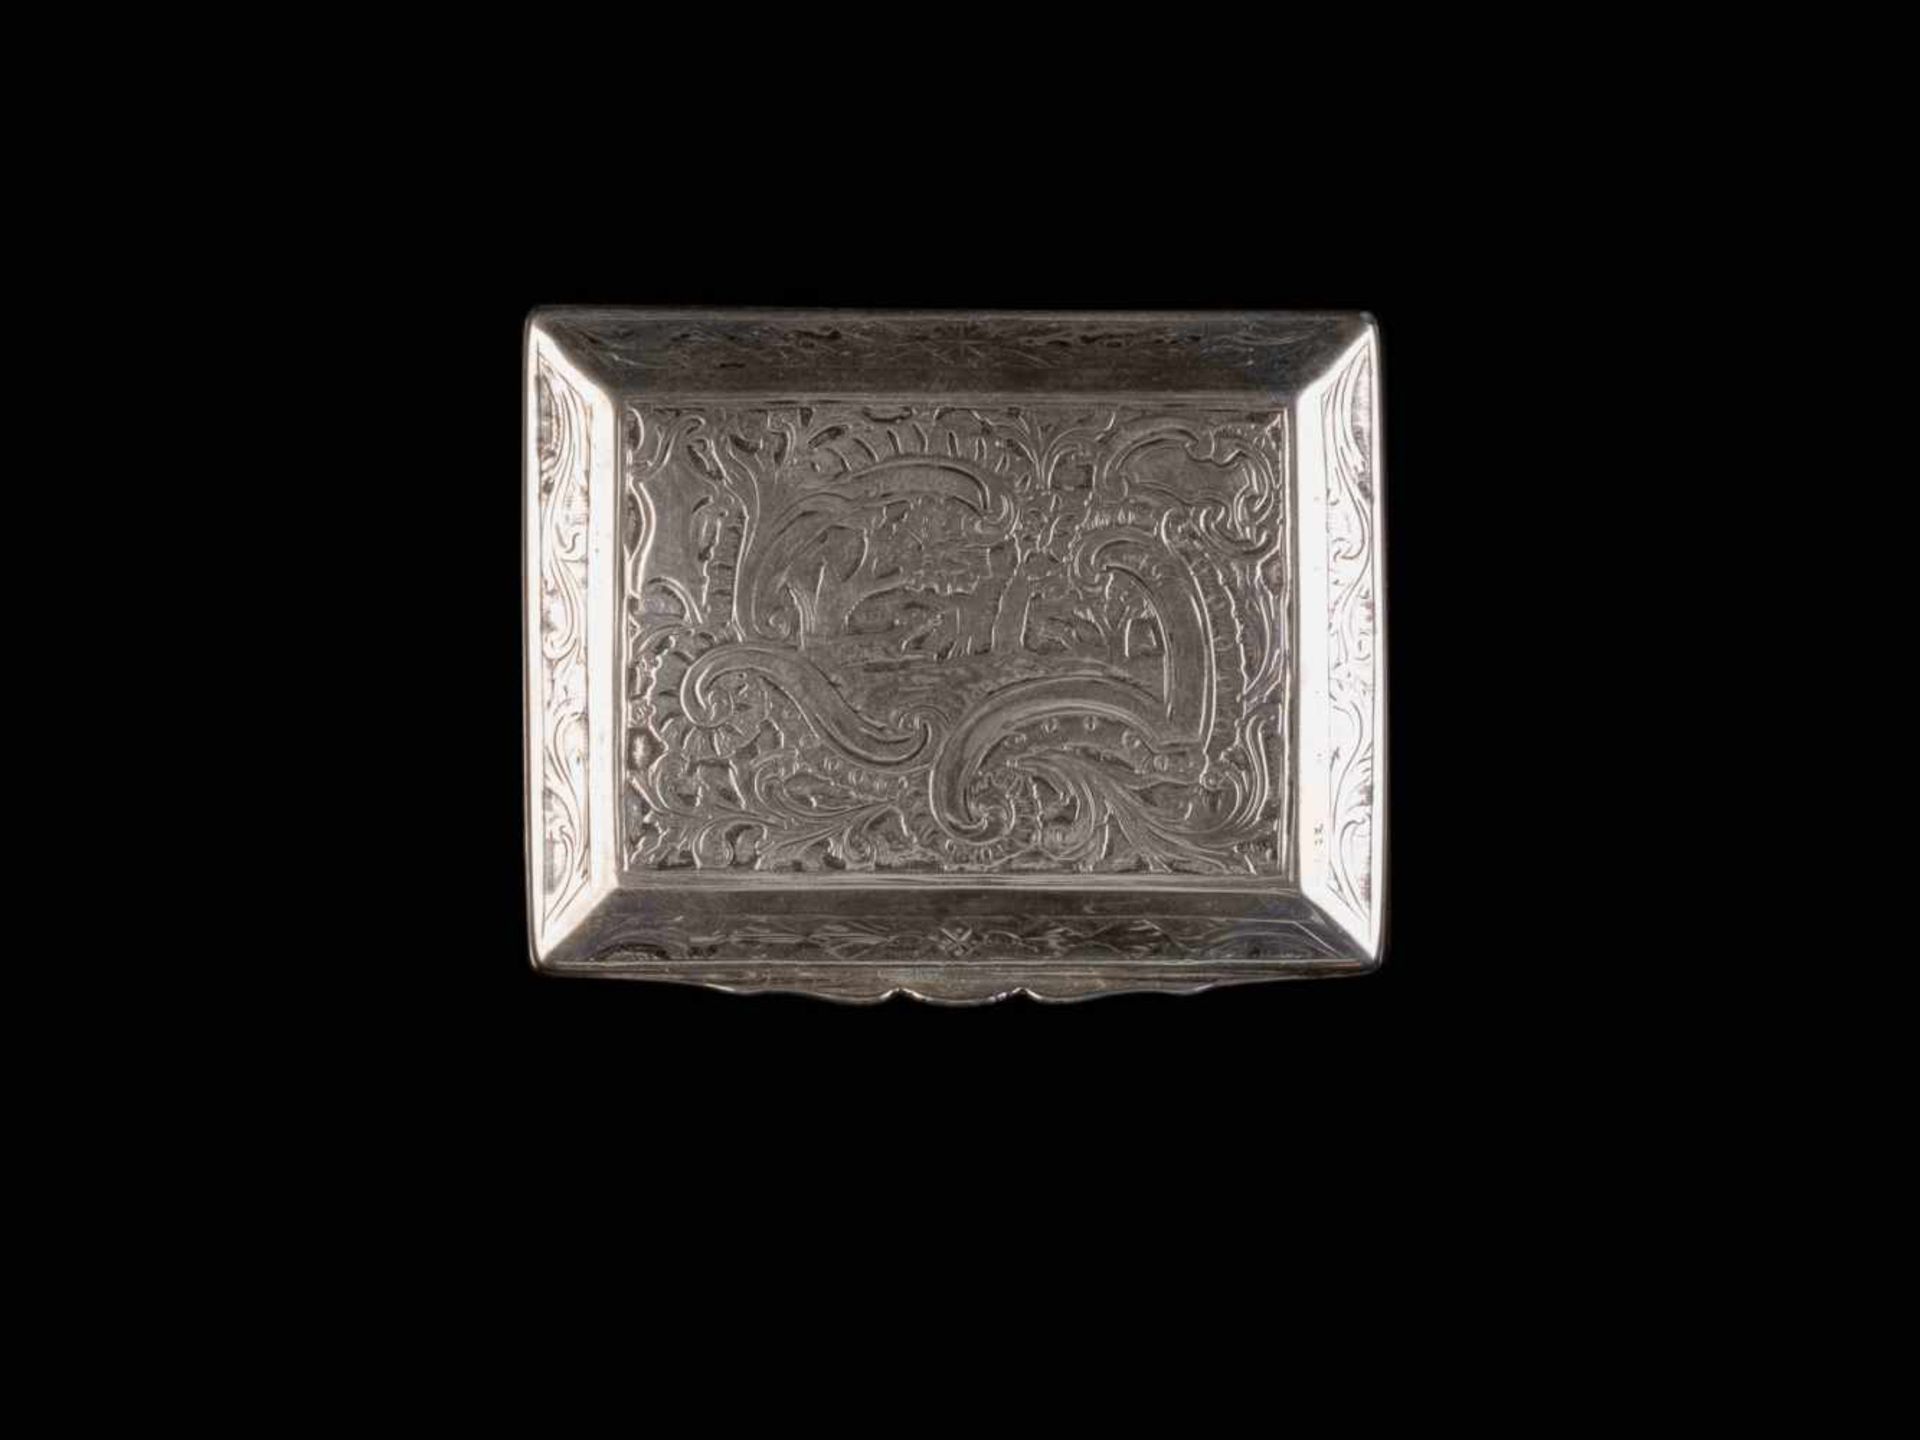 KLEINE ROKOKO-DOSE Wohl Deutsch, um 1760 Silber, getrieben, innen vergoldet. L. 7,6 cm, 110 g.